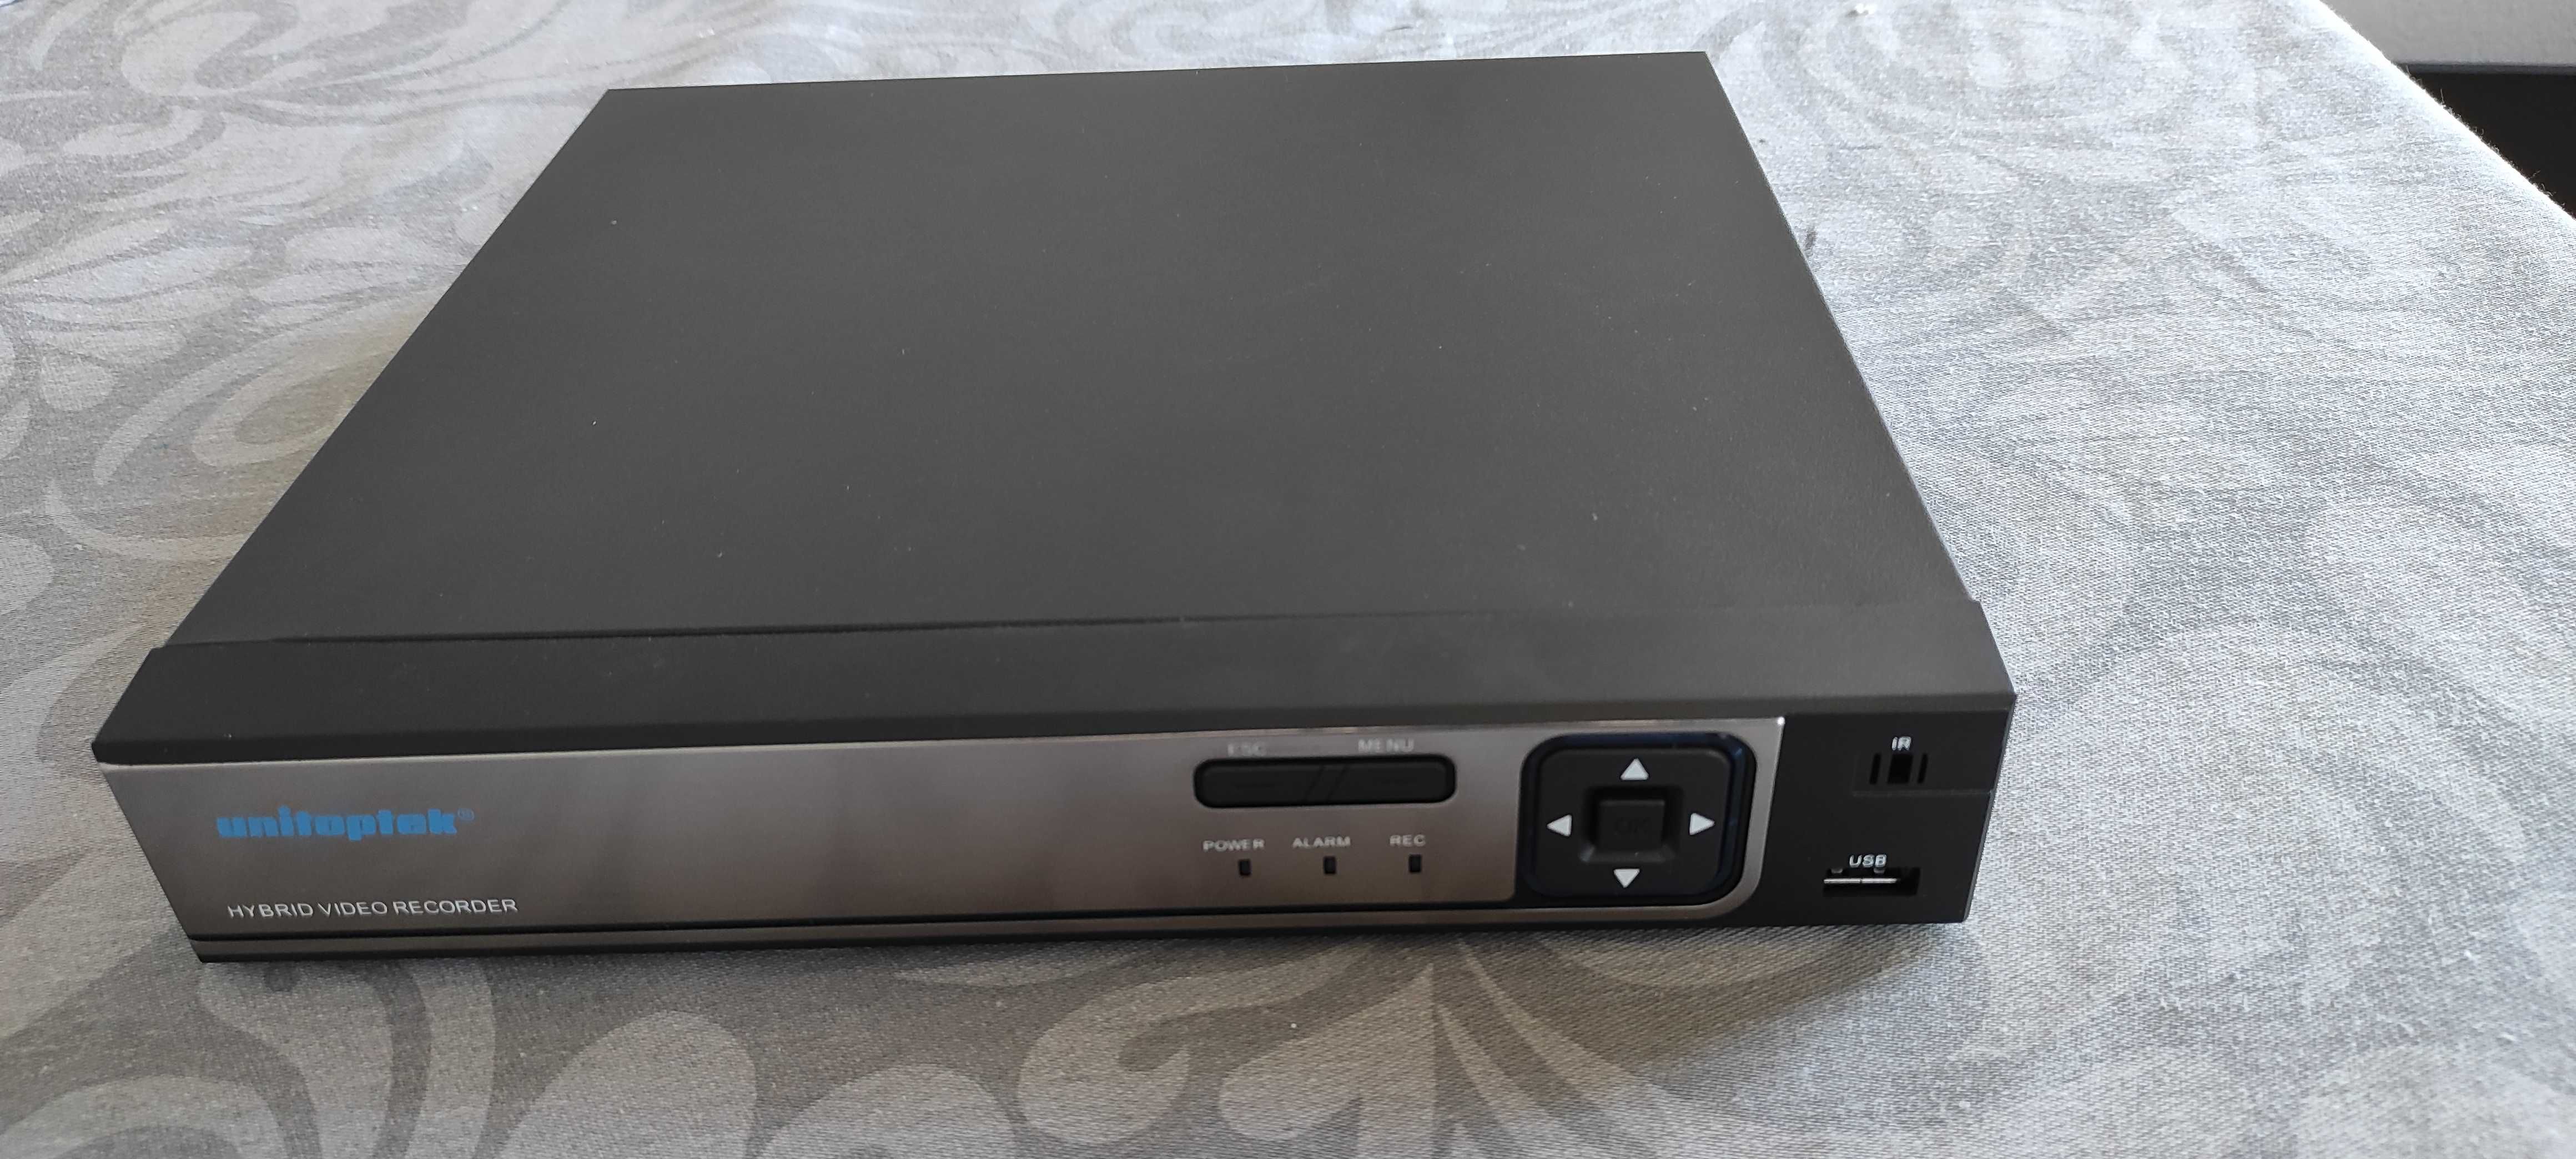 Vendo Unitoptek DVR 8channel poe 4MP HD Network Diginal VIdeo Recorder